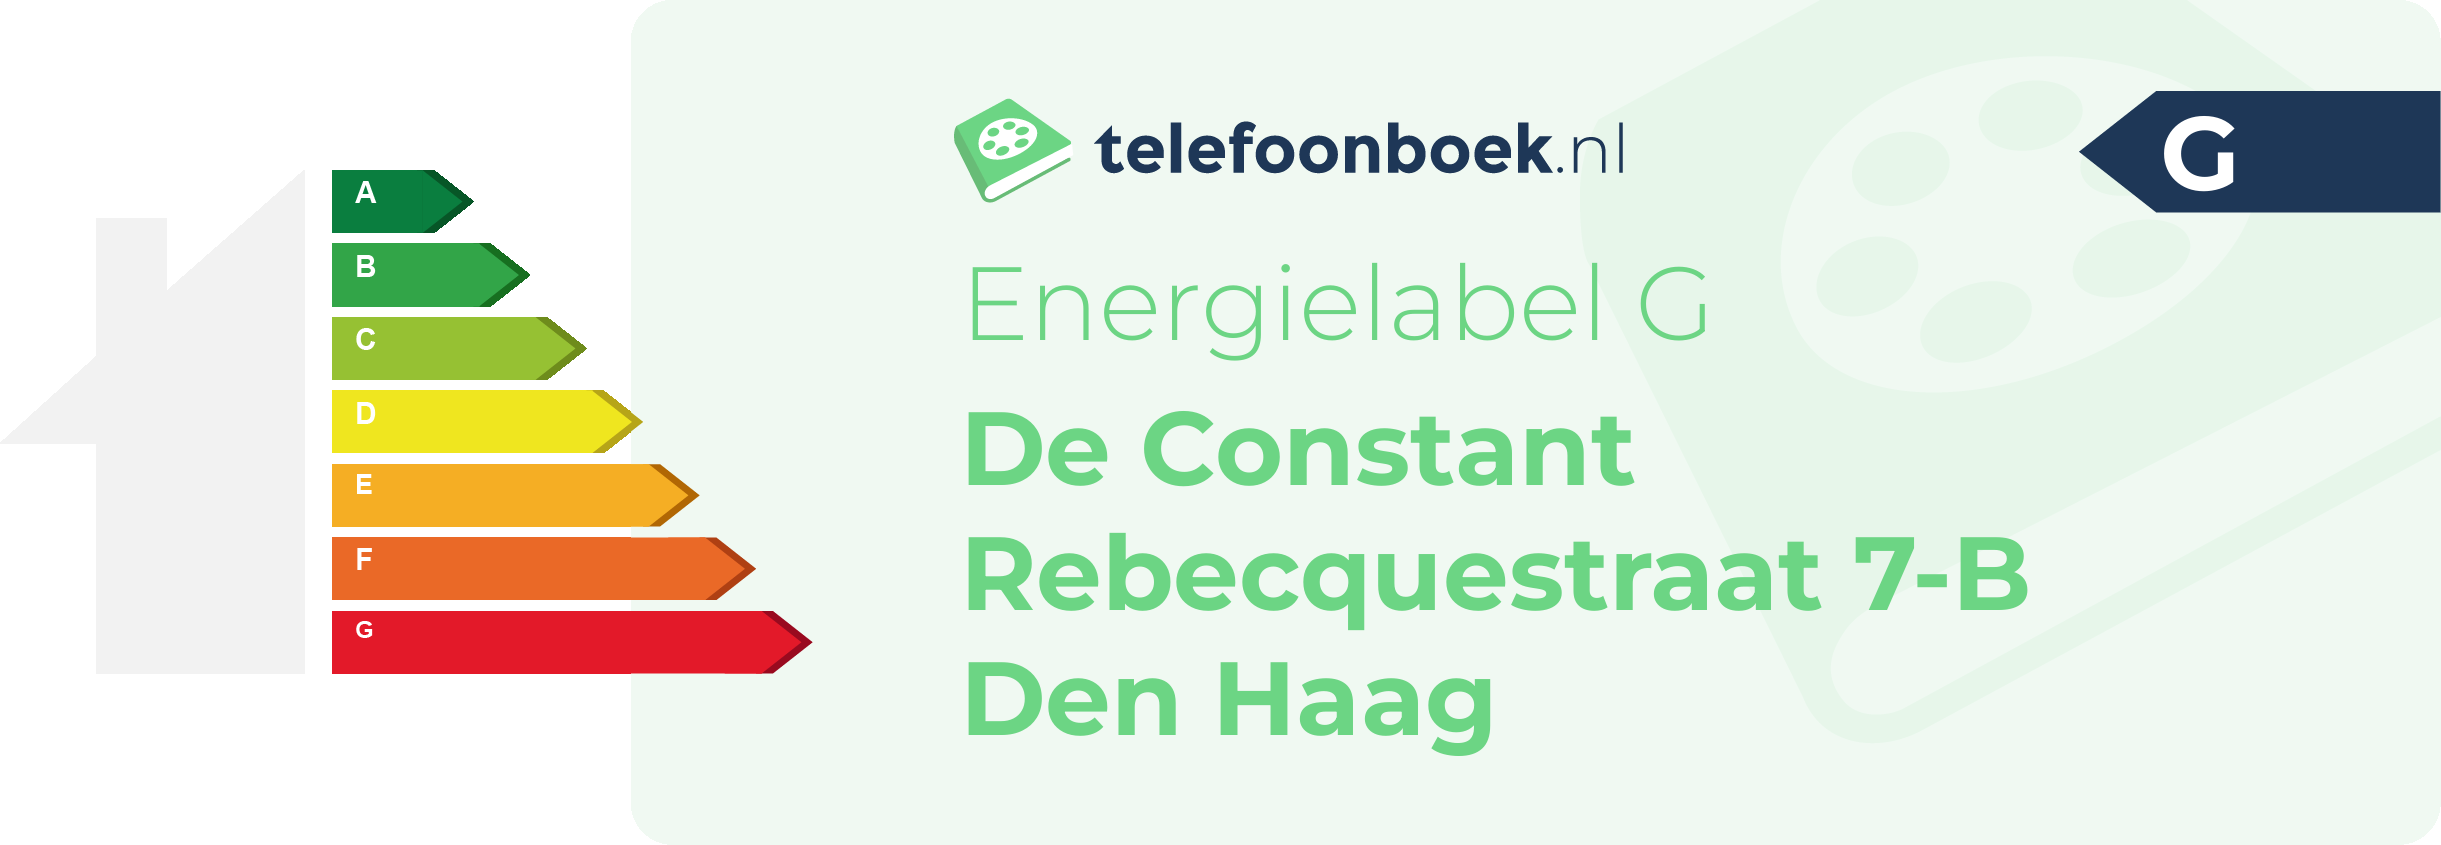 Energielabel De Constant Rebecquestraat 7-B Den Haag